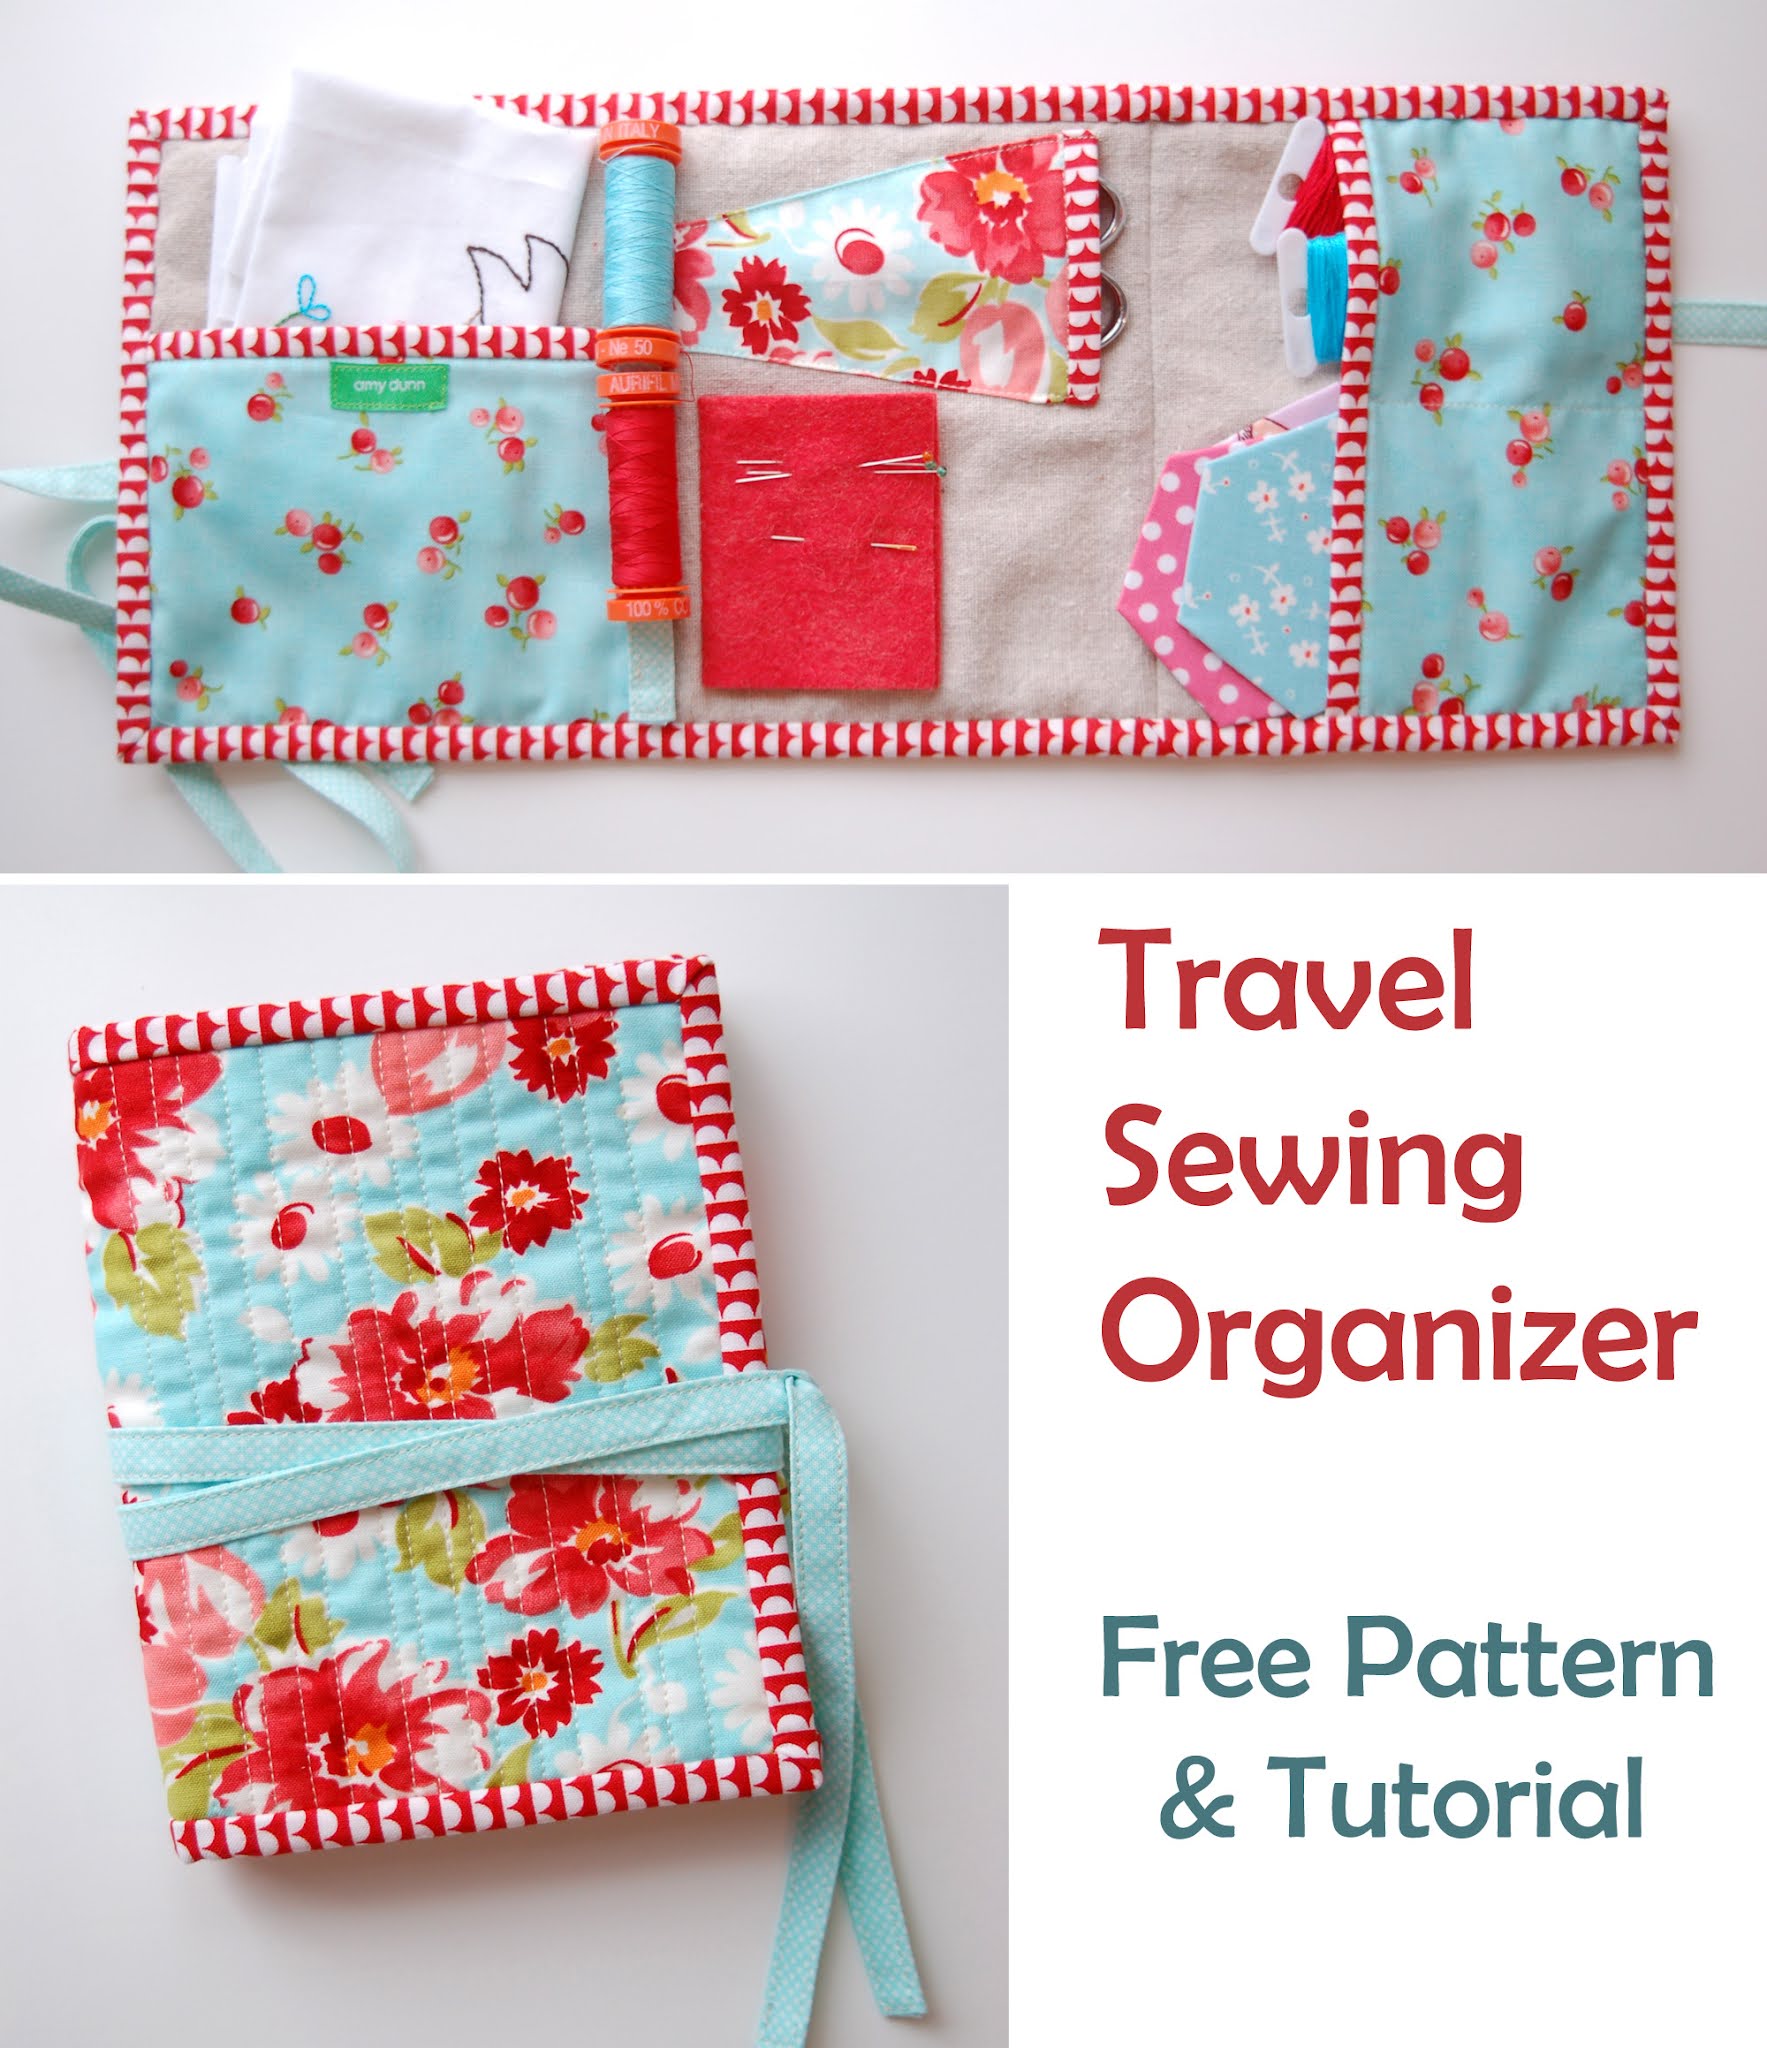 Travel Sewing Kit PDF Sewing Pattern, Sewing Organizer Pattern